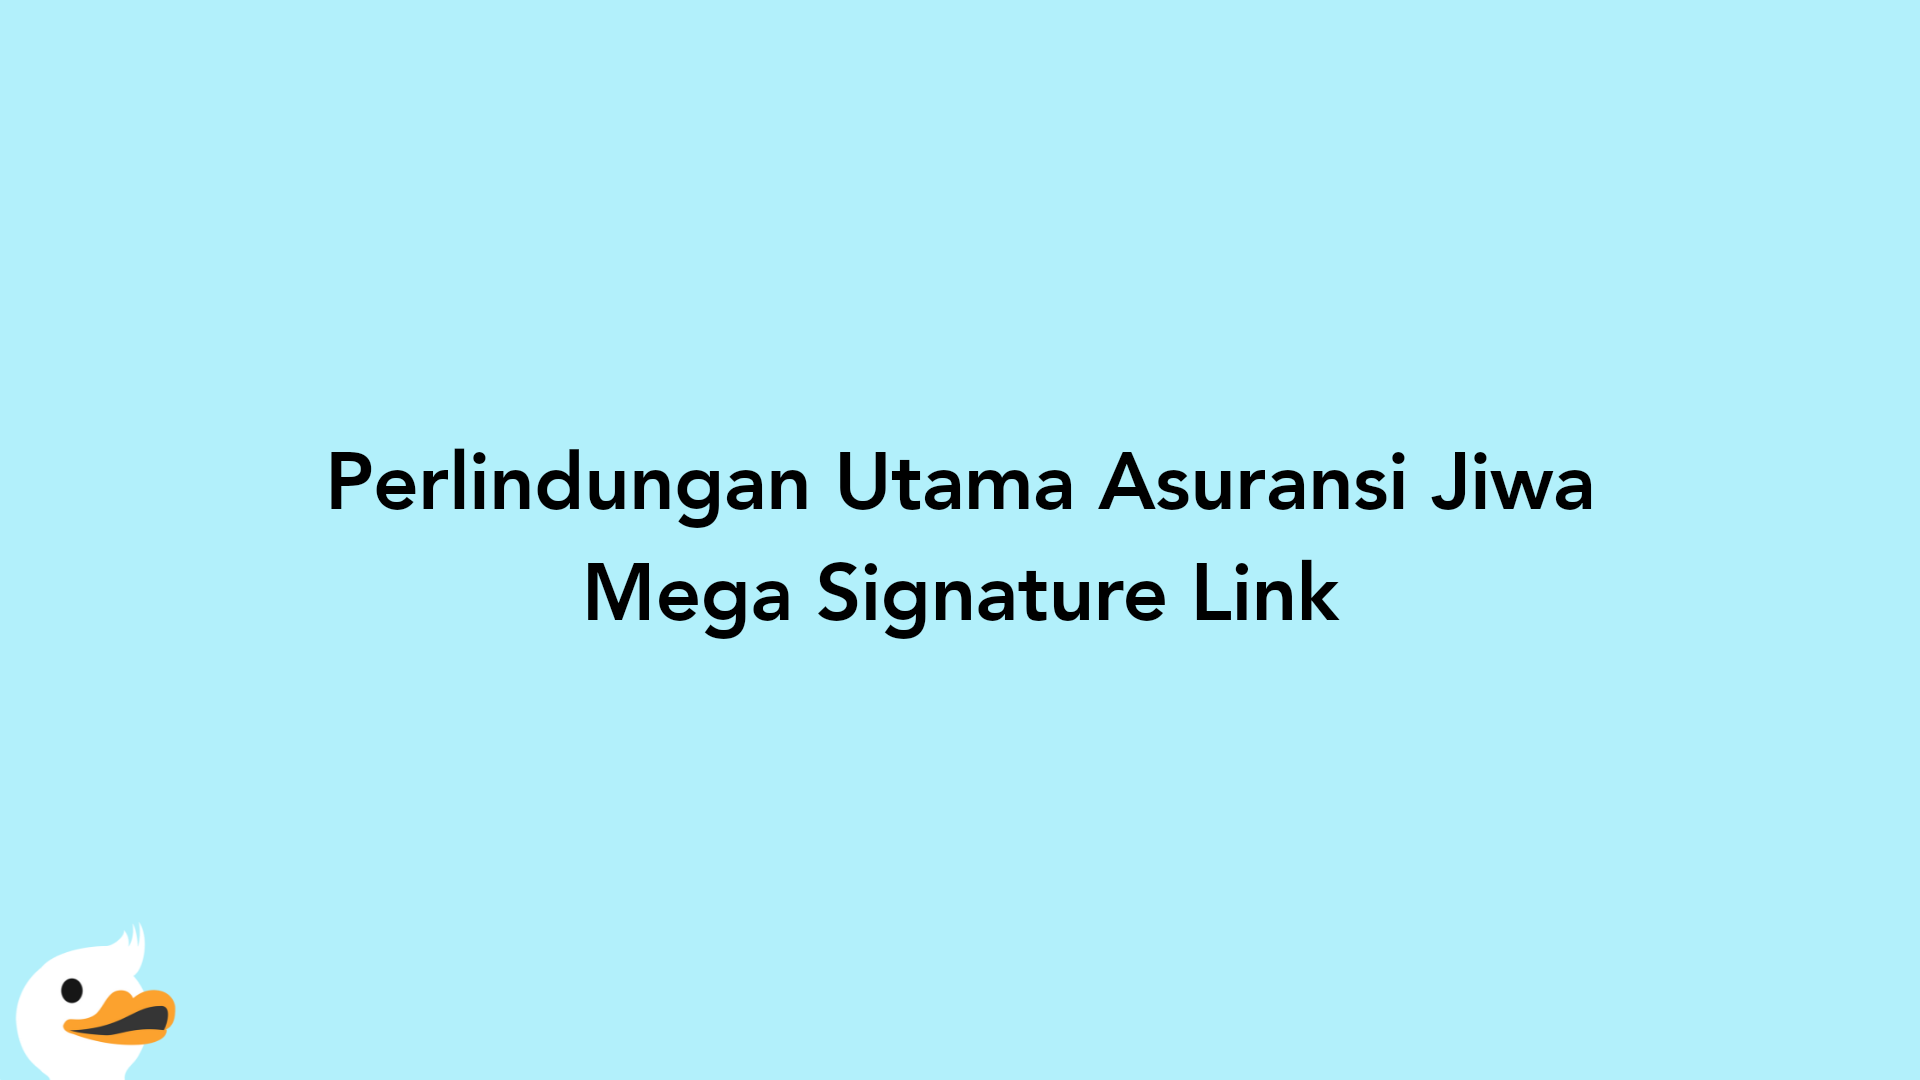 Perlindungan Utama Asuransi Jiwa Mega Signature Link